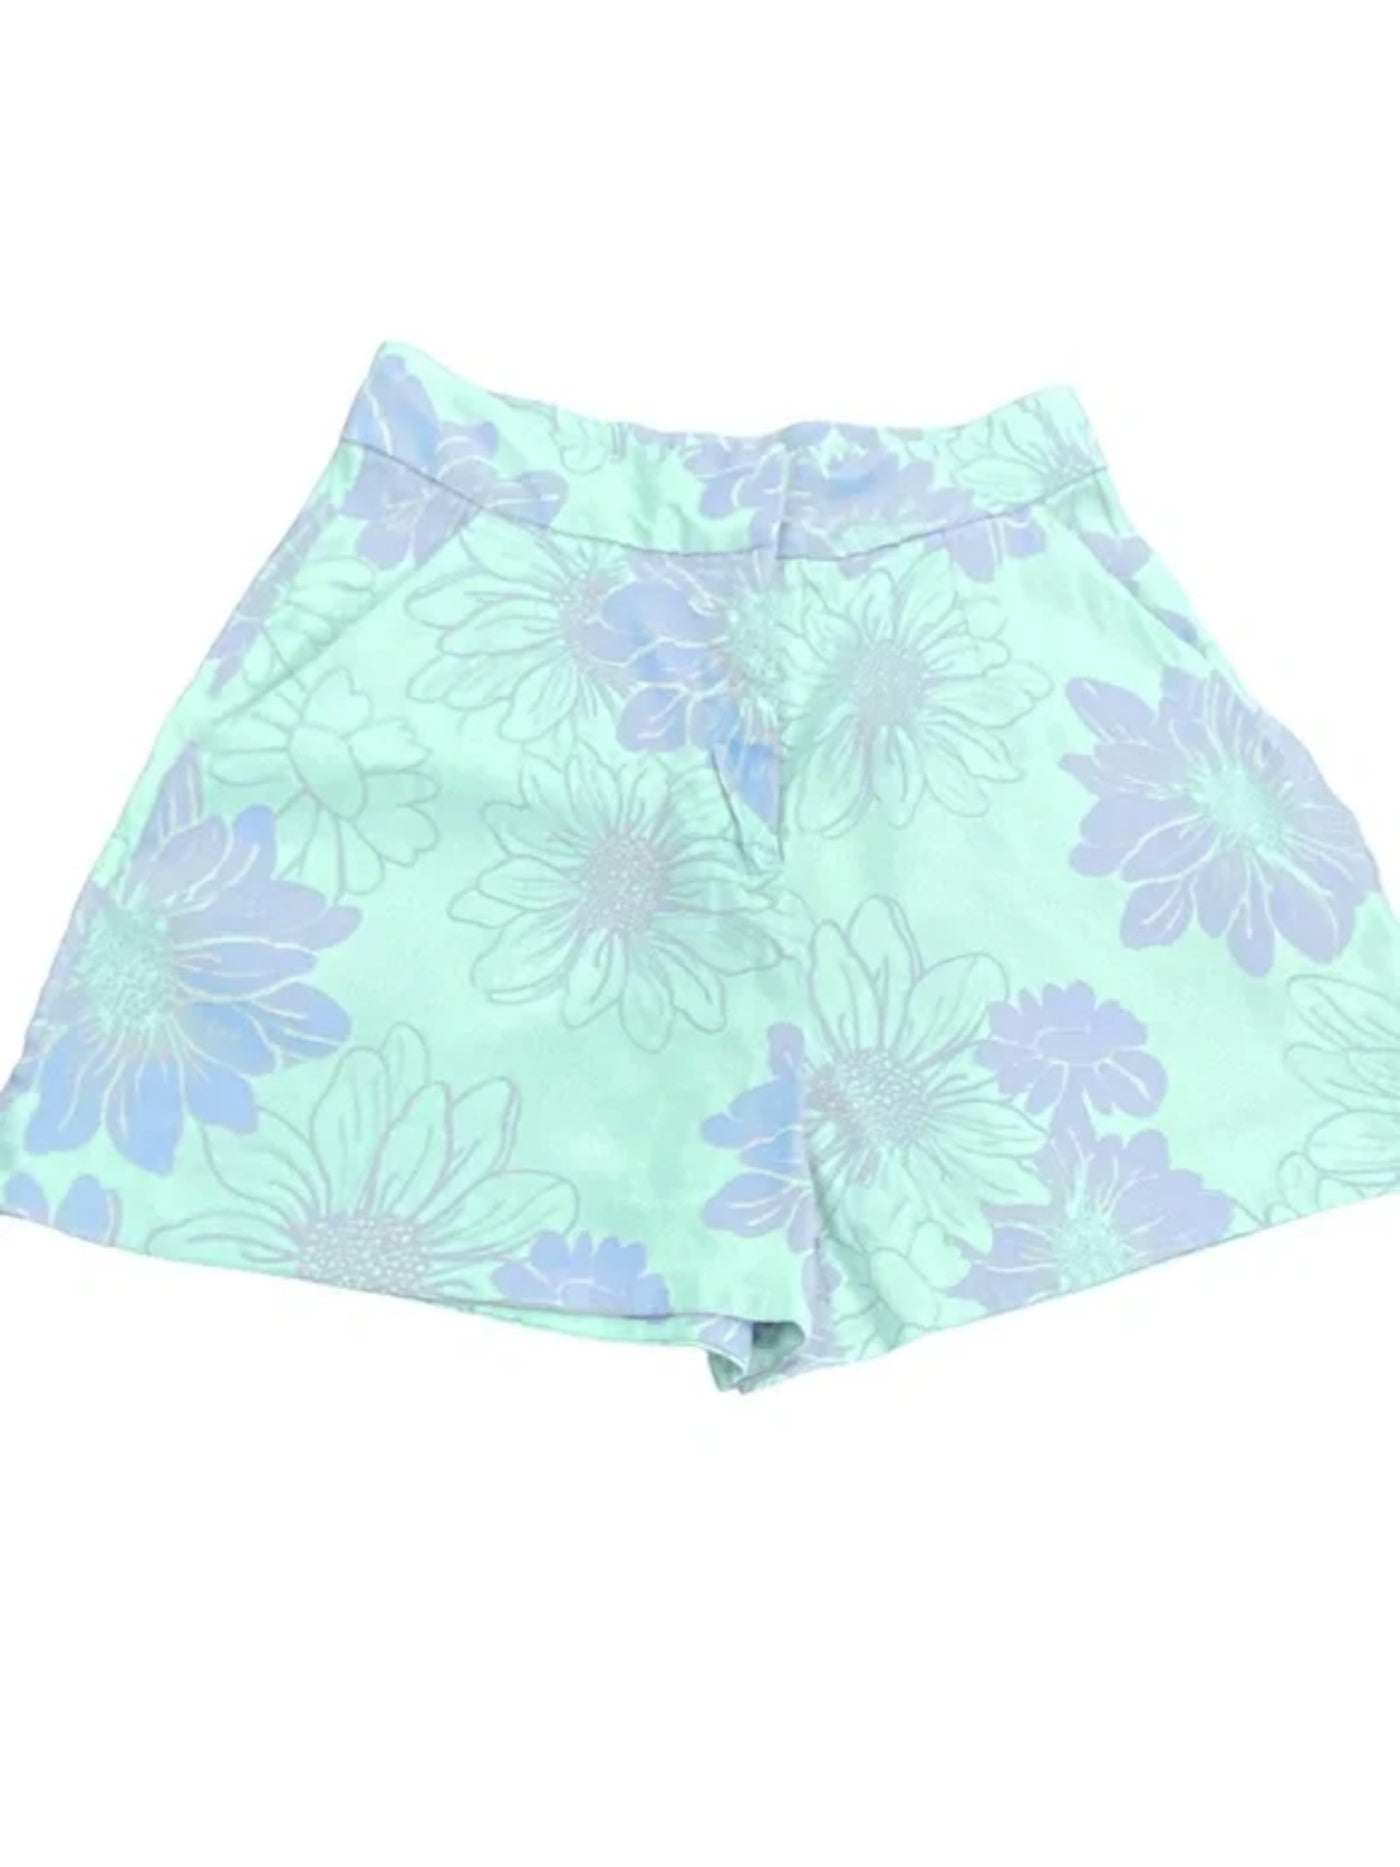 LEYDEN Womens Aqua Zippered Pocketed Wide Leg Floral High Waist Shorts M